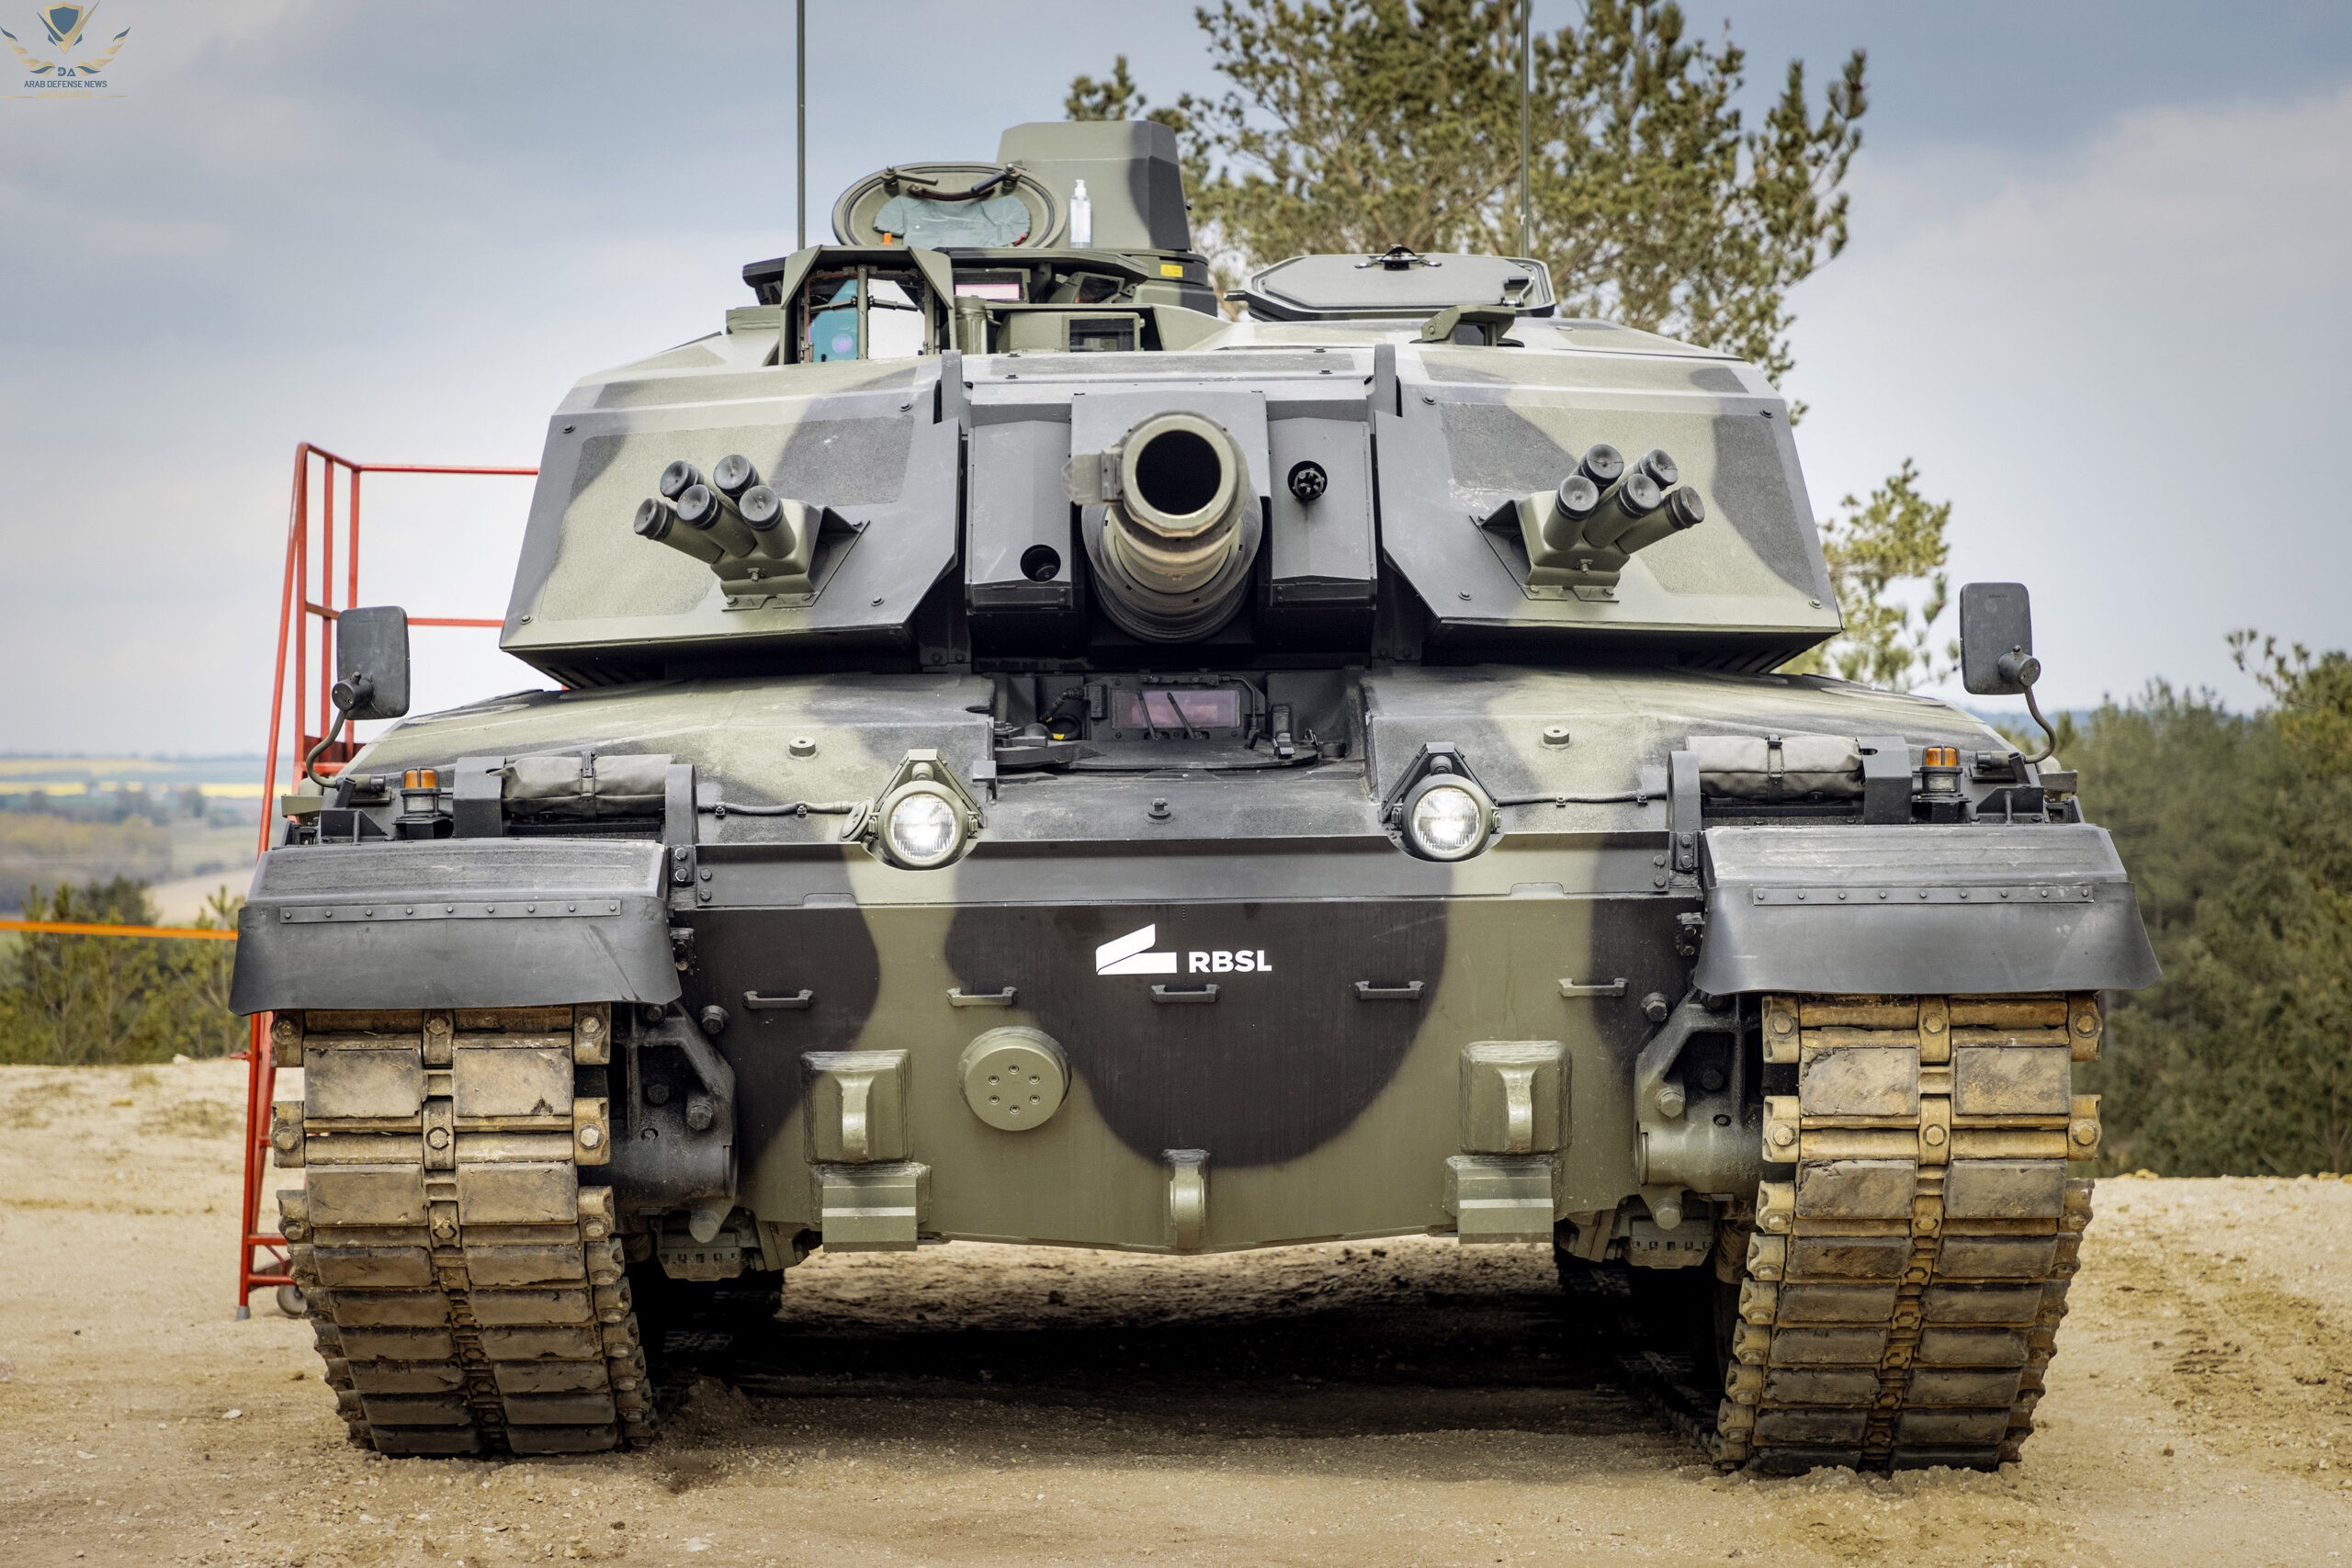 دبابة تشالنجر 3 الجديدة للجيش البريطاني تحصل على دروع معيارية متطورة